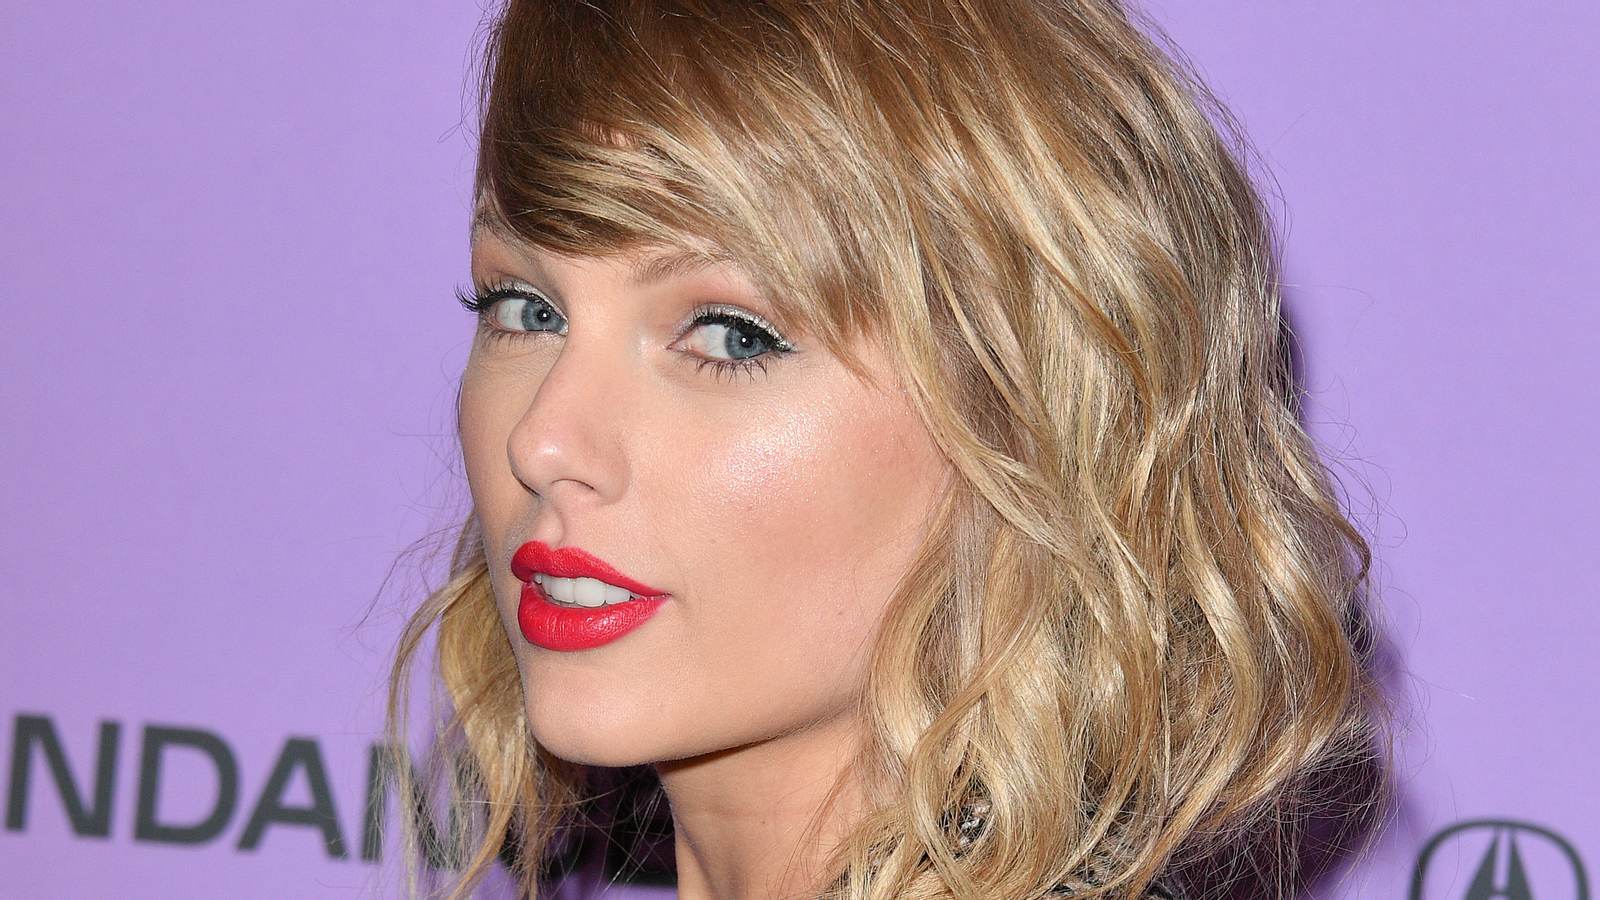 Taylor Swift Neuer Look Sie Uberrascht Mit Bunten Haaren Intouch